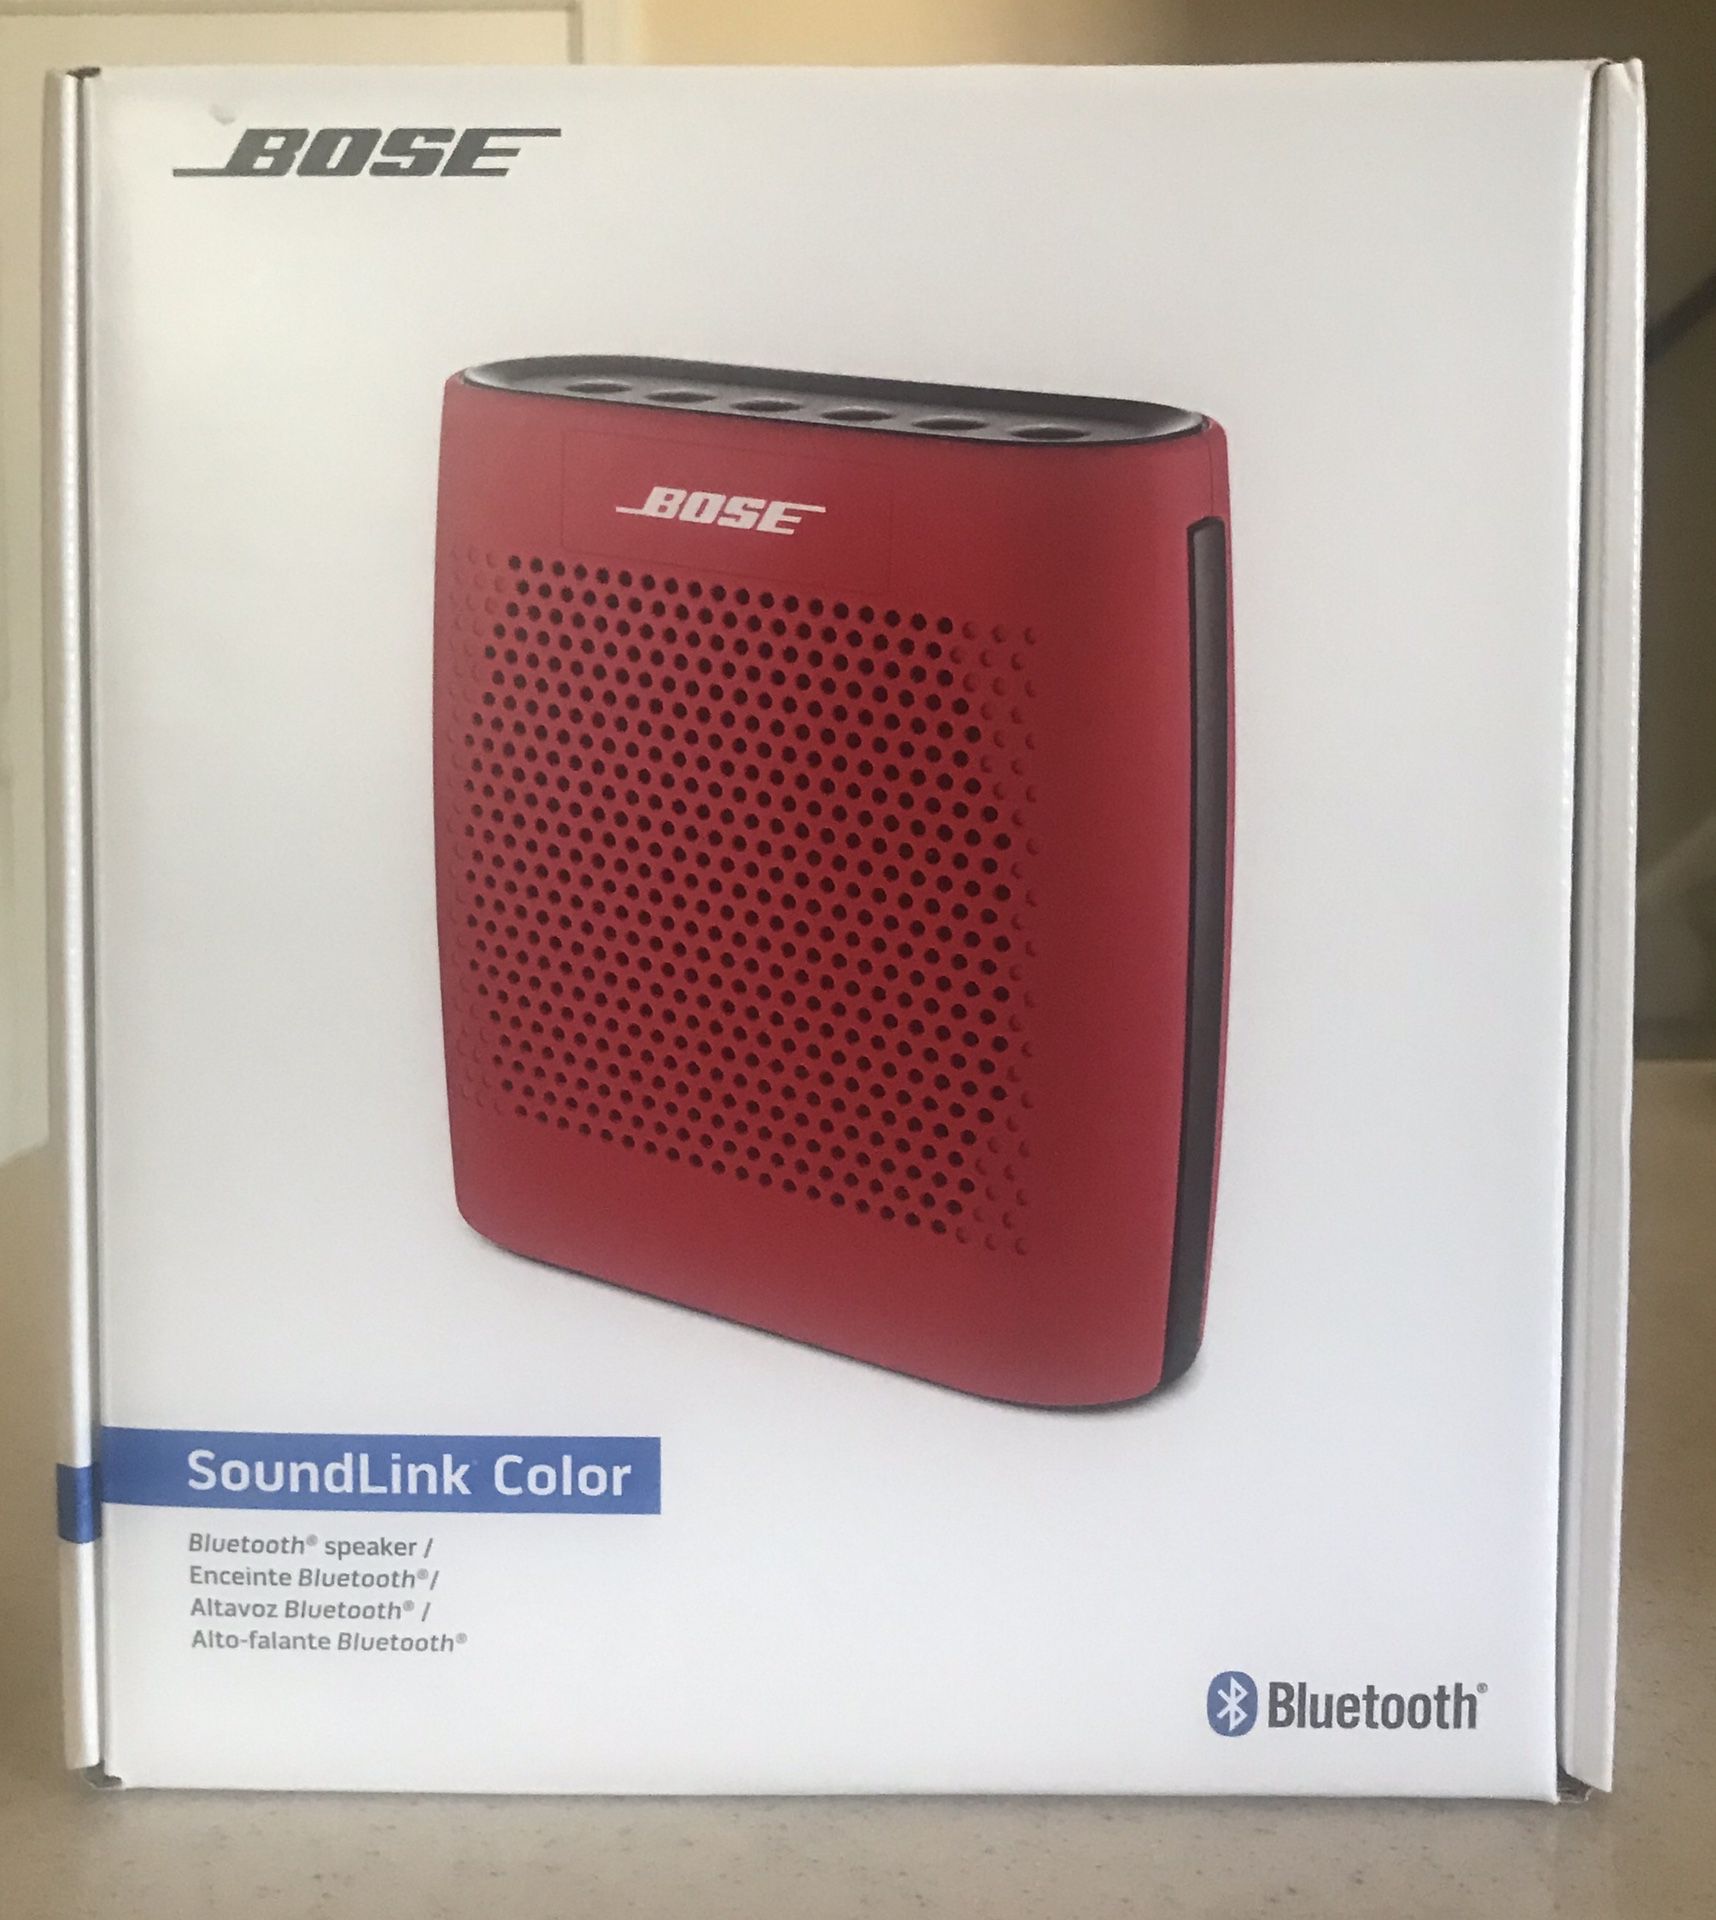 BOSE SoundLink Color Bluetooth speaker